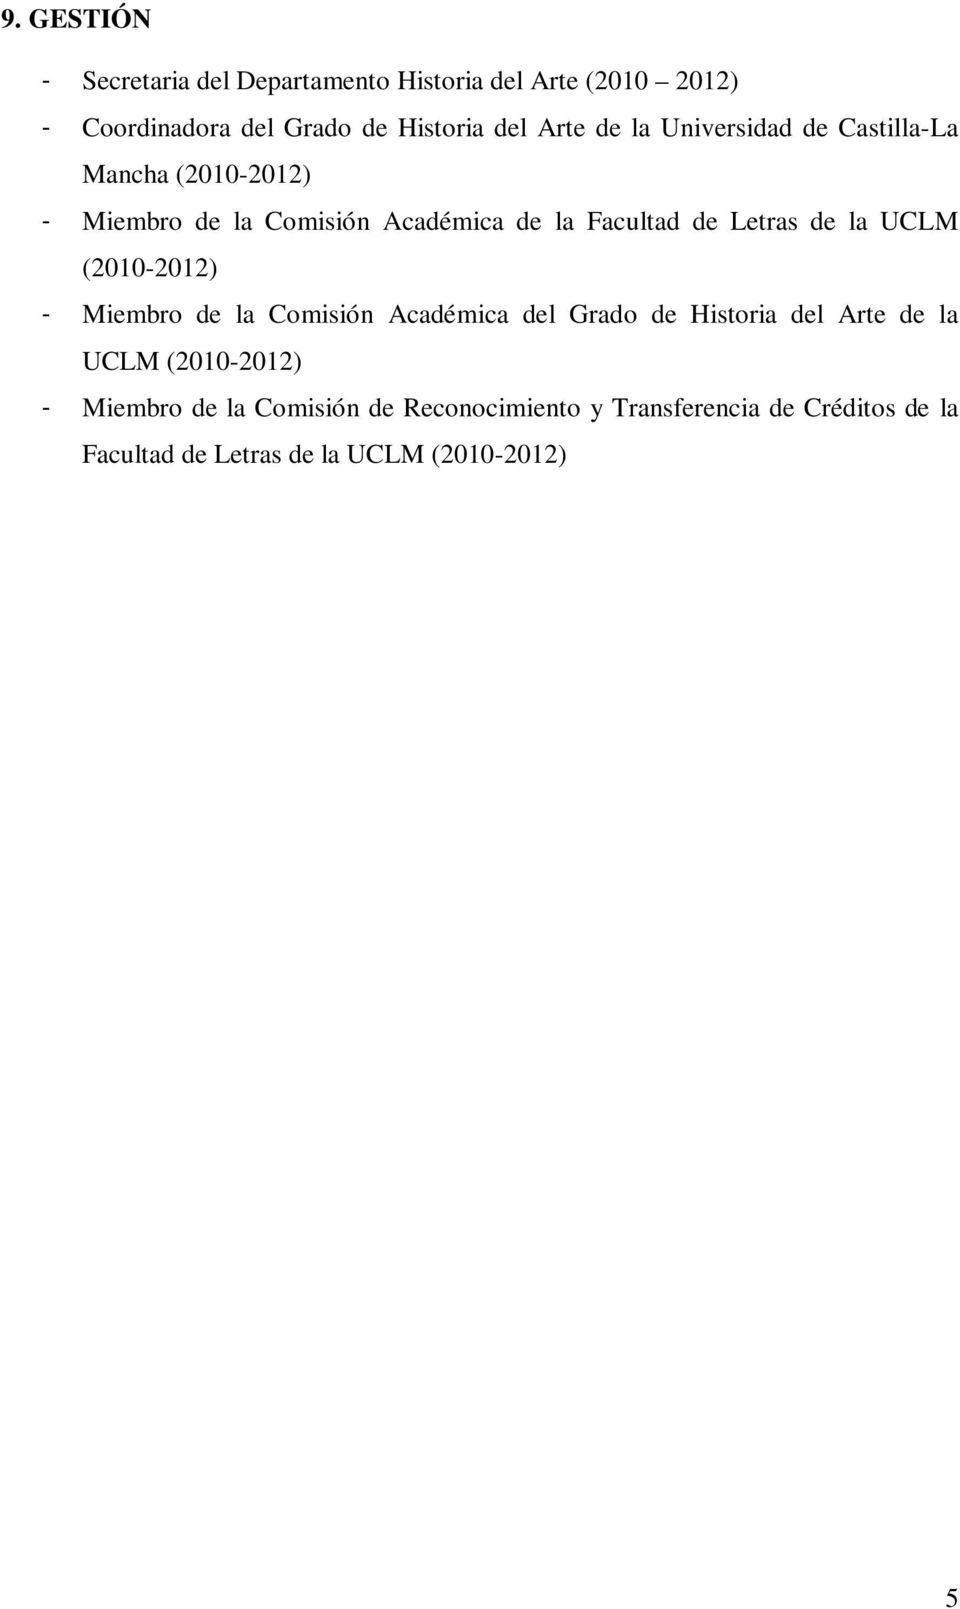 Letras de la UCLM (2010-2012) - Miembro de la Comisión Académica del Grado de Historia del Arte de la UCLM